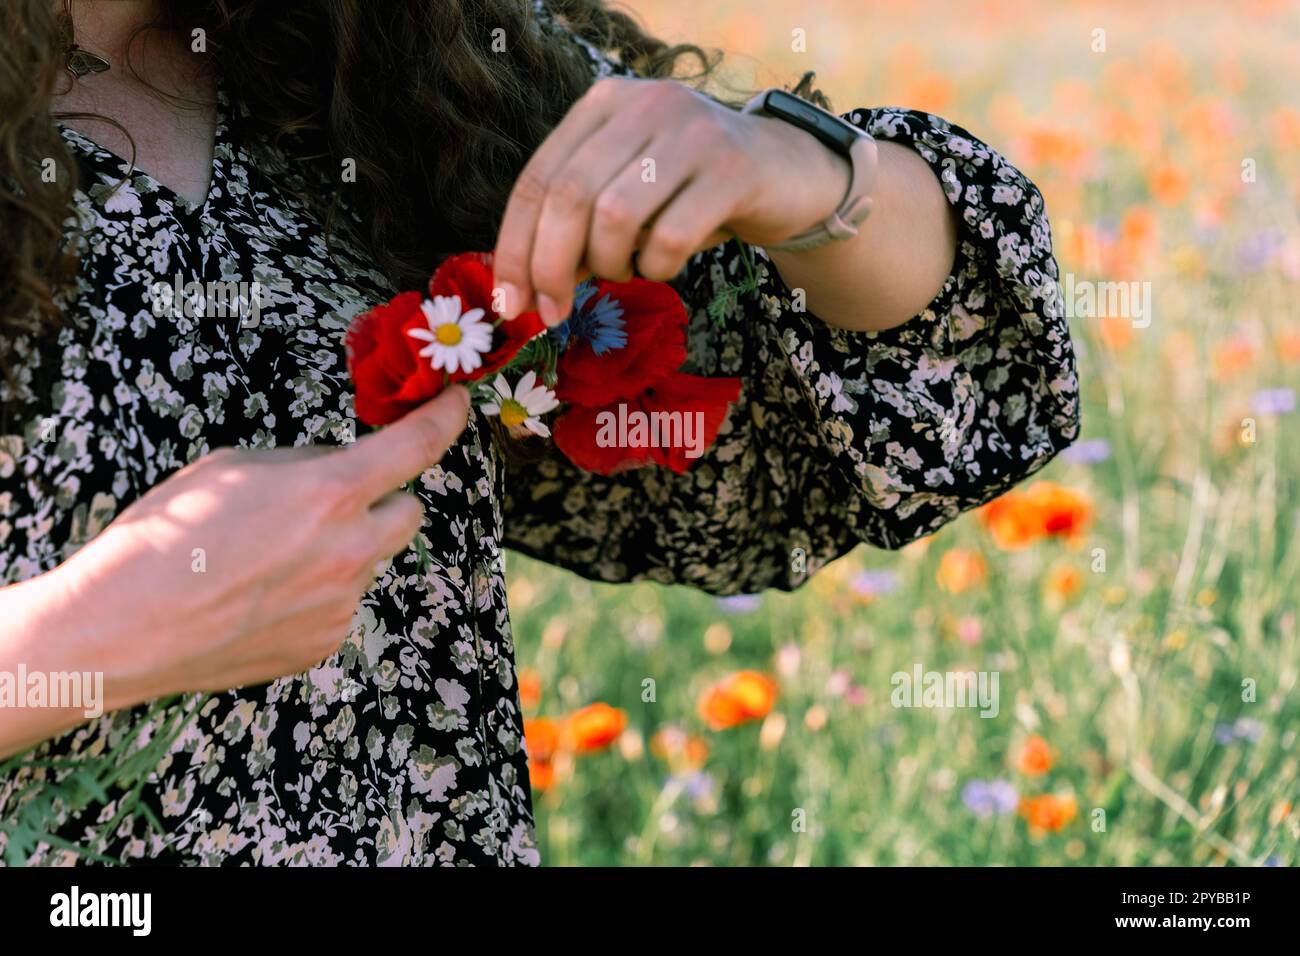 Nahaufnahme von Frauenhänden, die einen Kranz aus Mohn, Gänseblümchen und Maisblumen weben Stockfoto